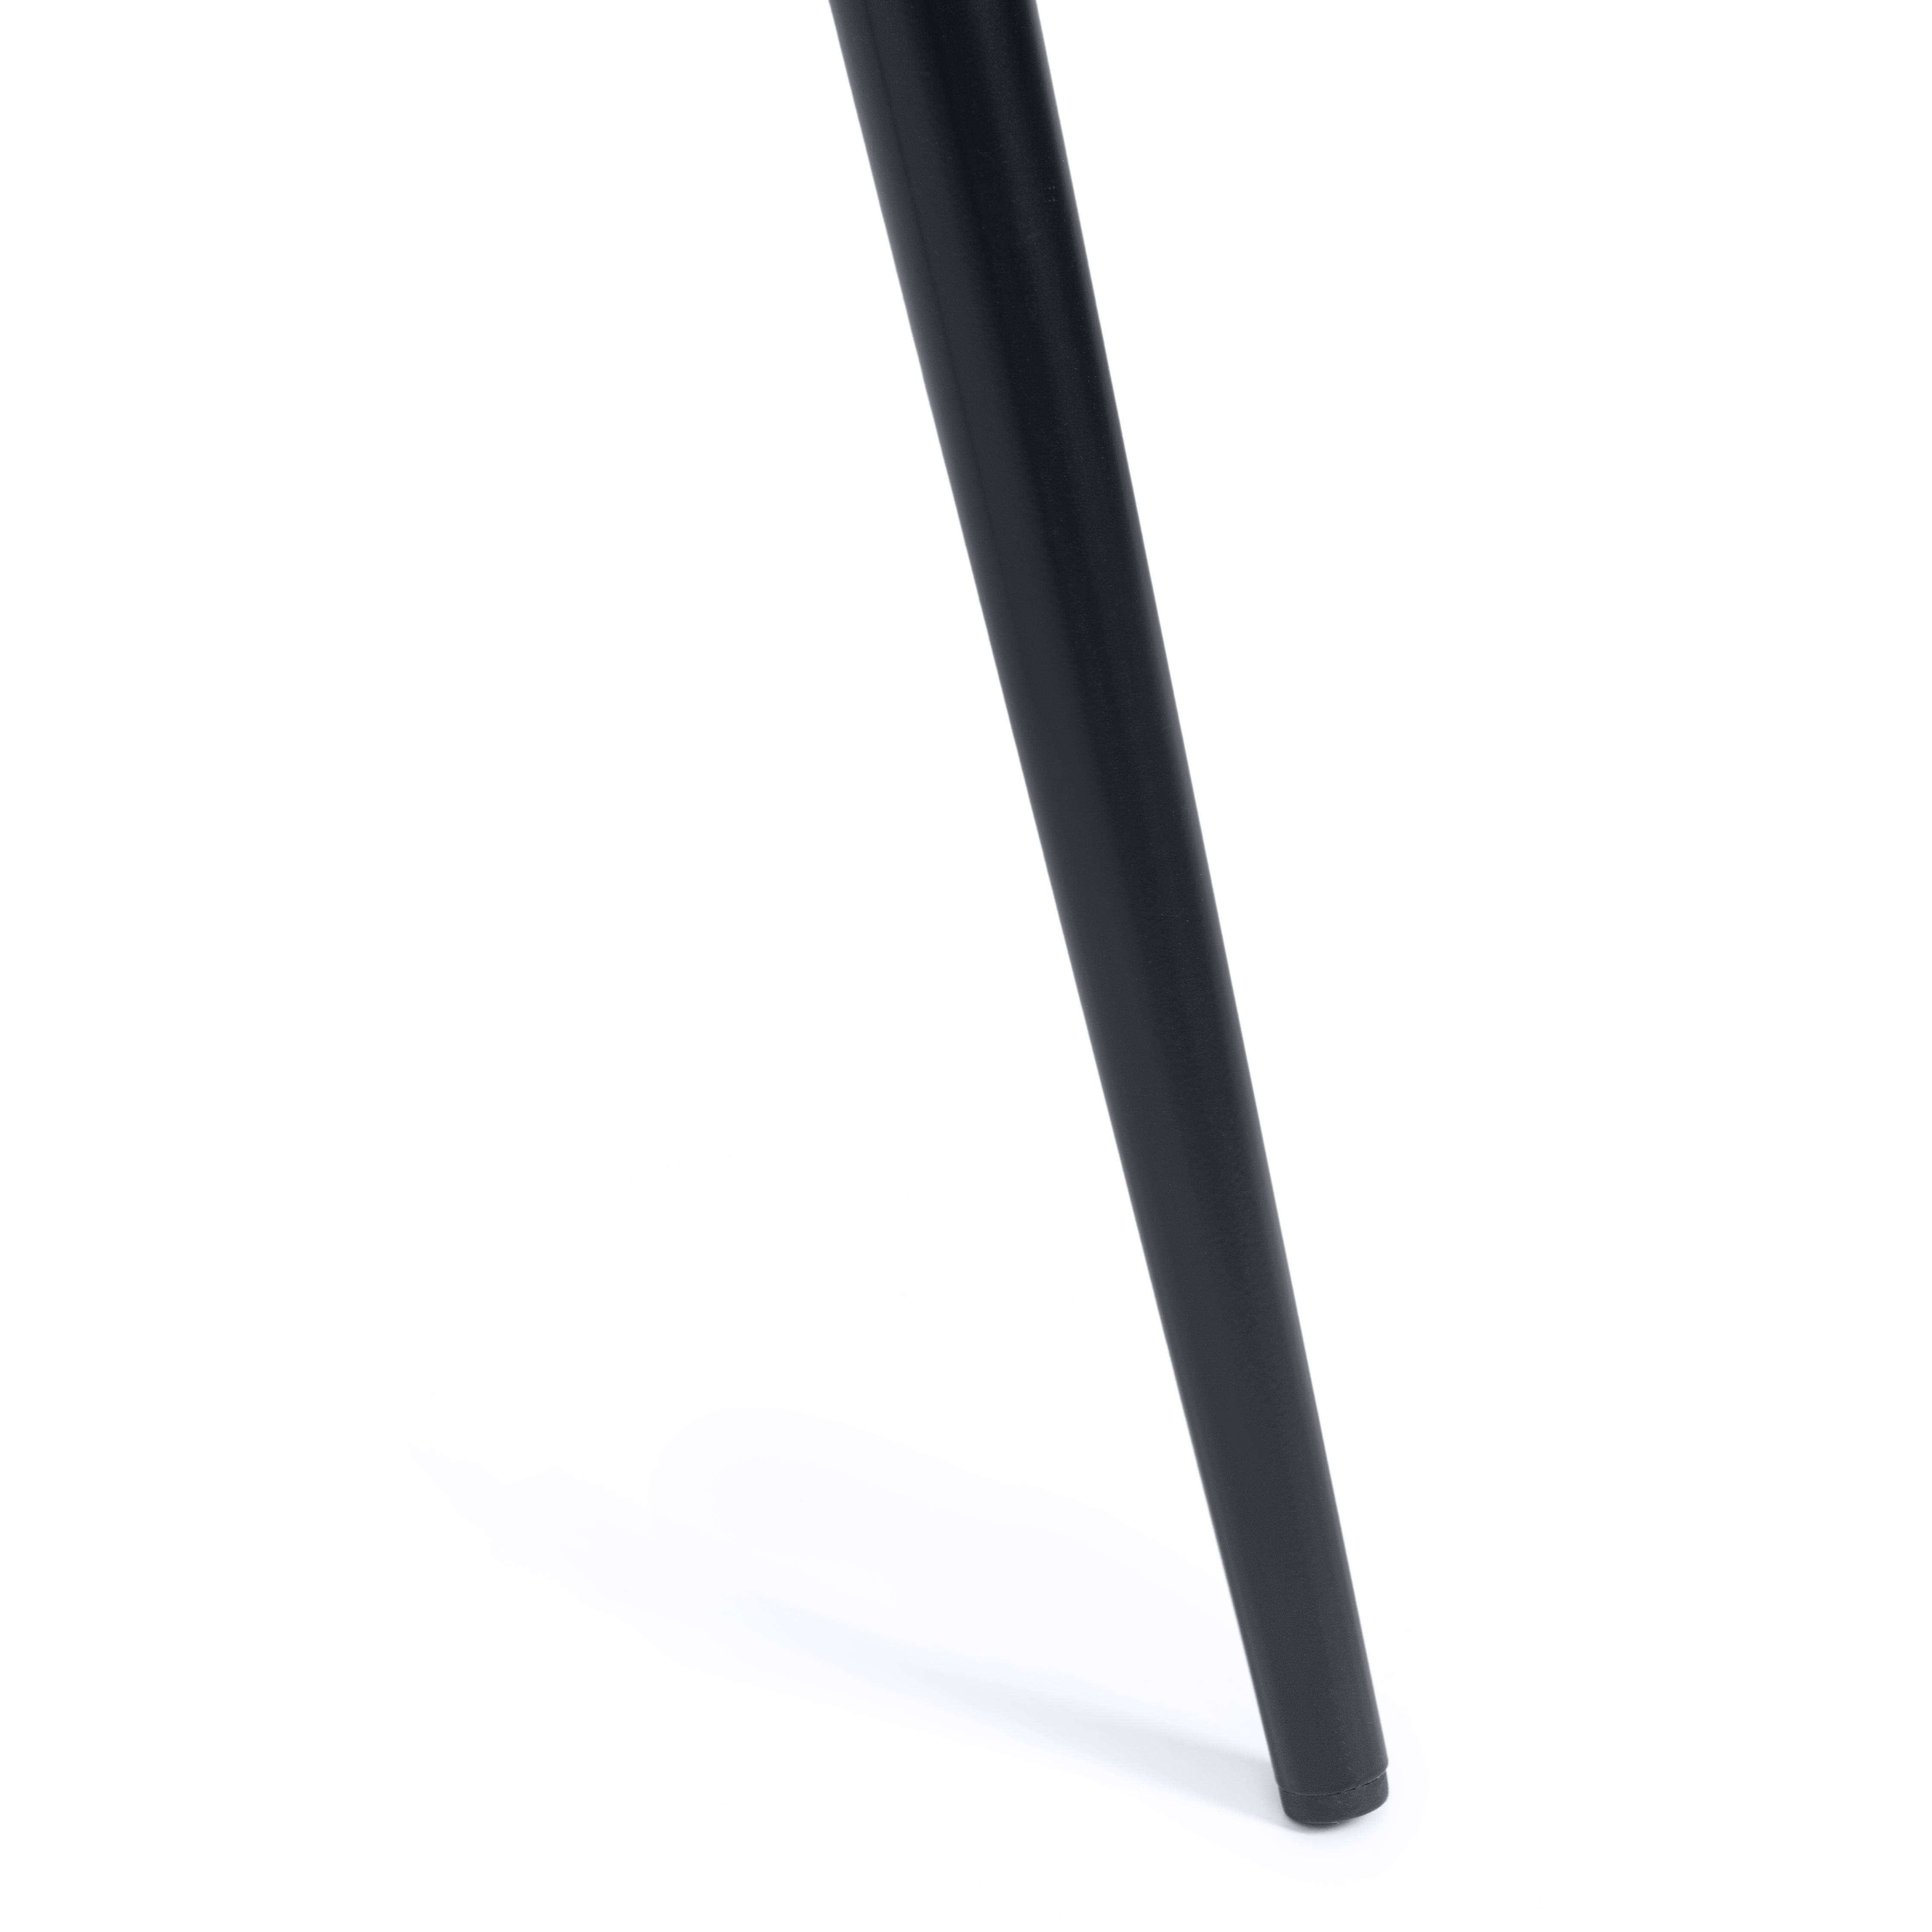 Стул CHILLY (mod. 7095-1) ткань/металл, 45x53х88 см, высота до сиденья 50 см, бежевый barkhat 5/черный